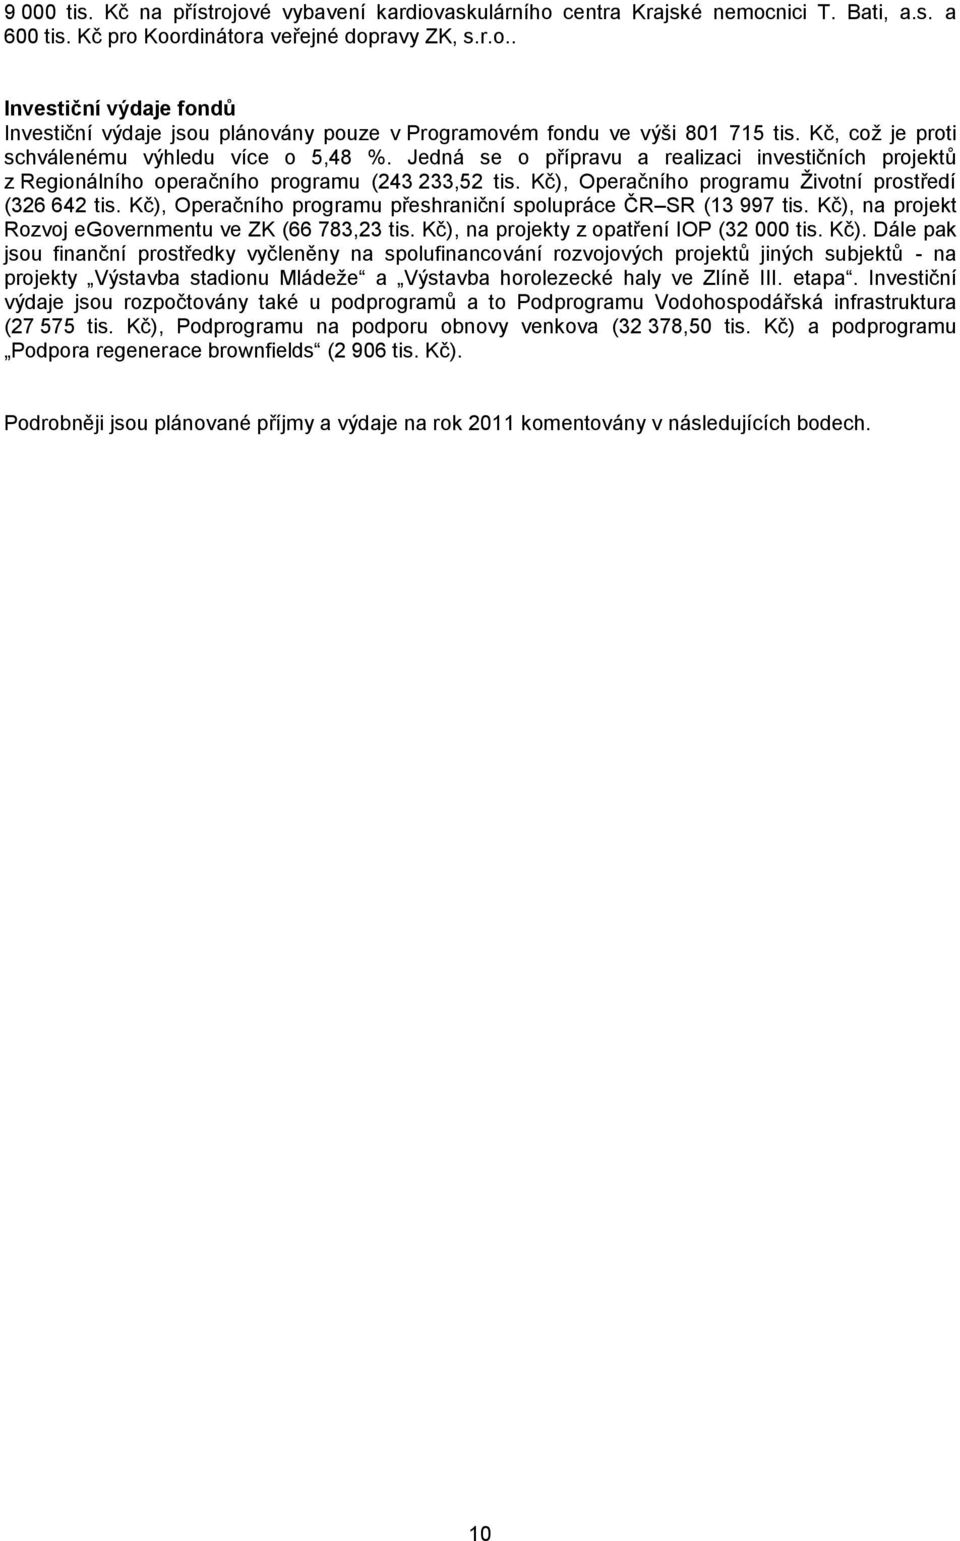 Kč), Operačního programu Ţivotní prostředí (326 642 tis. Kč), Operačního programu přeshraniční spolupráce ČR SR (13 997 tis. Kč), na projekt Rozvoj egovernmentu ve ZK (66 783,23 tis.